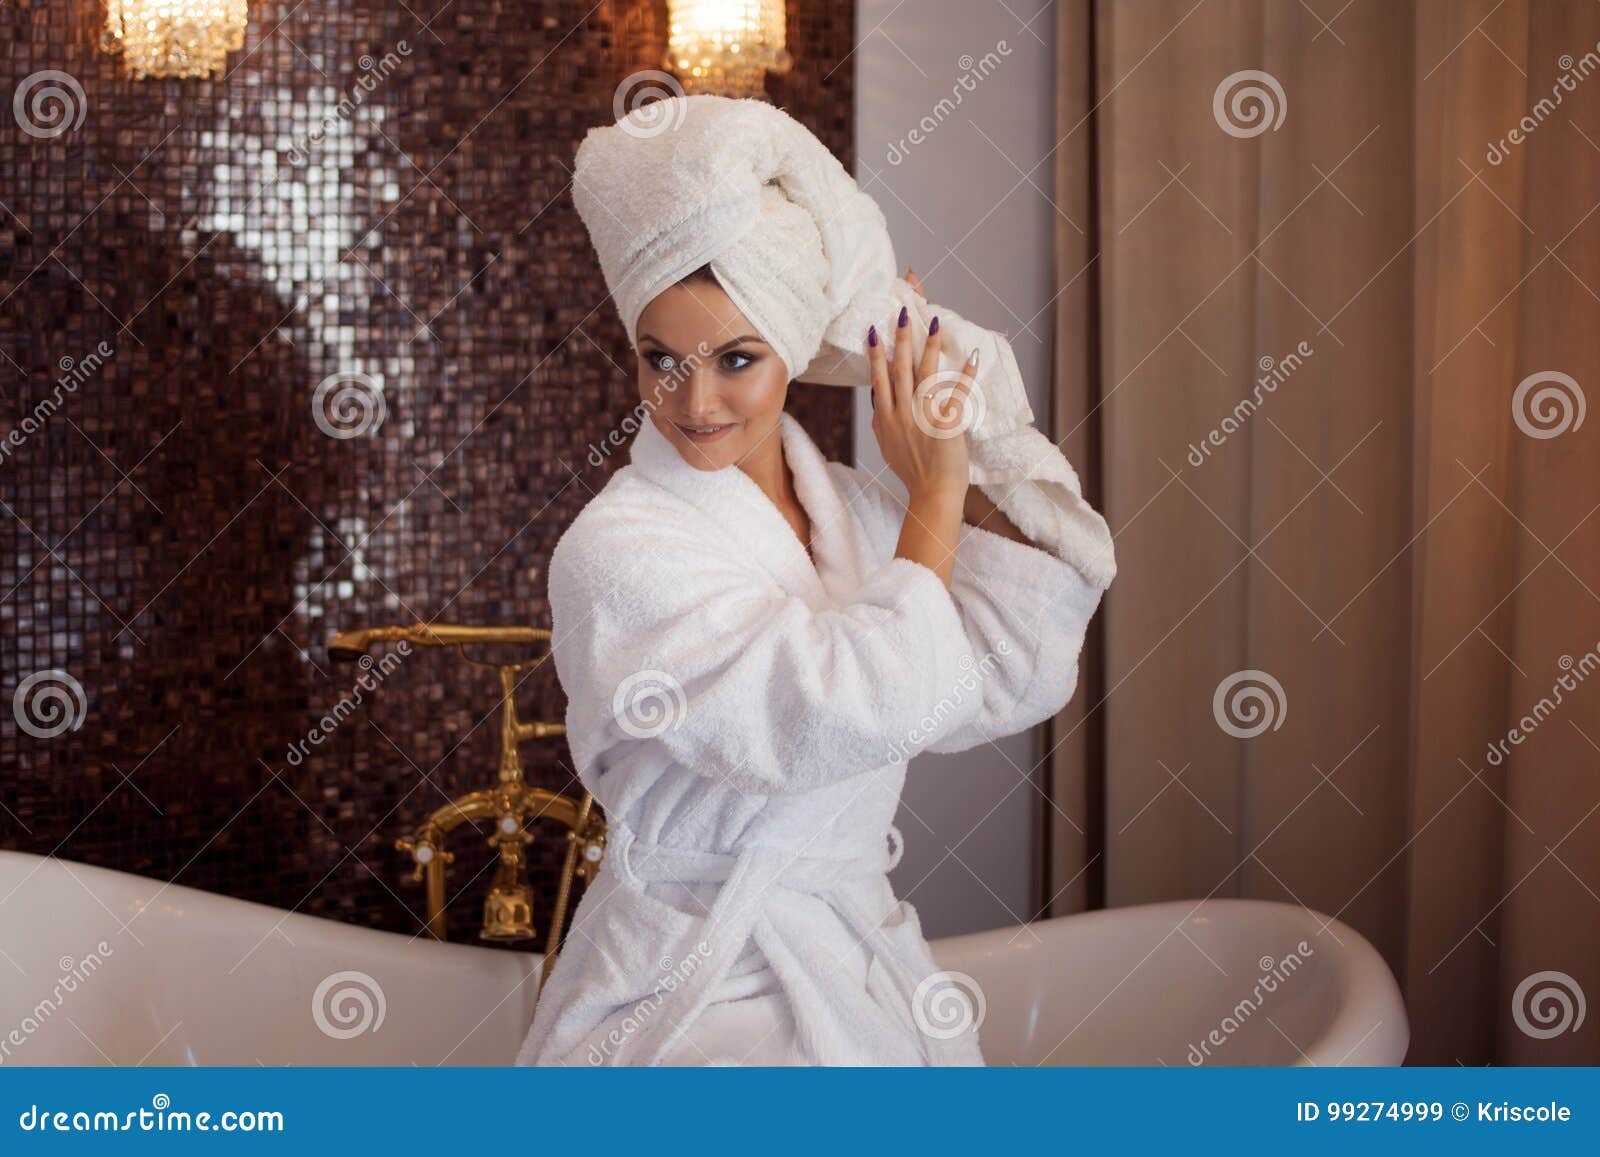 Женщина после ванной. Девушка в халате и полотенце на голове. Фотосессия в халате и полотенце. Девушка с полотенцем на голове. Девушка в халате ванна.